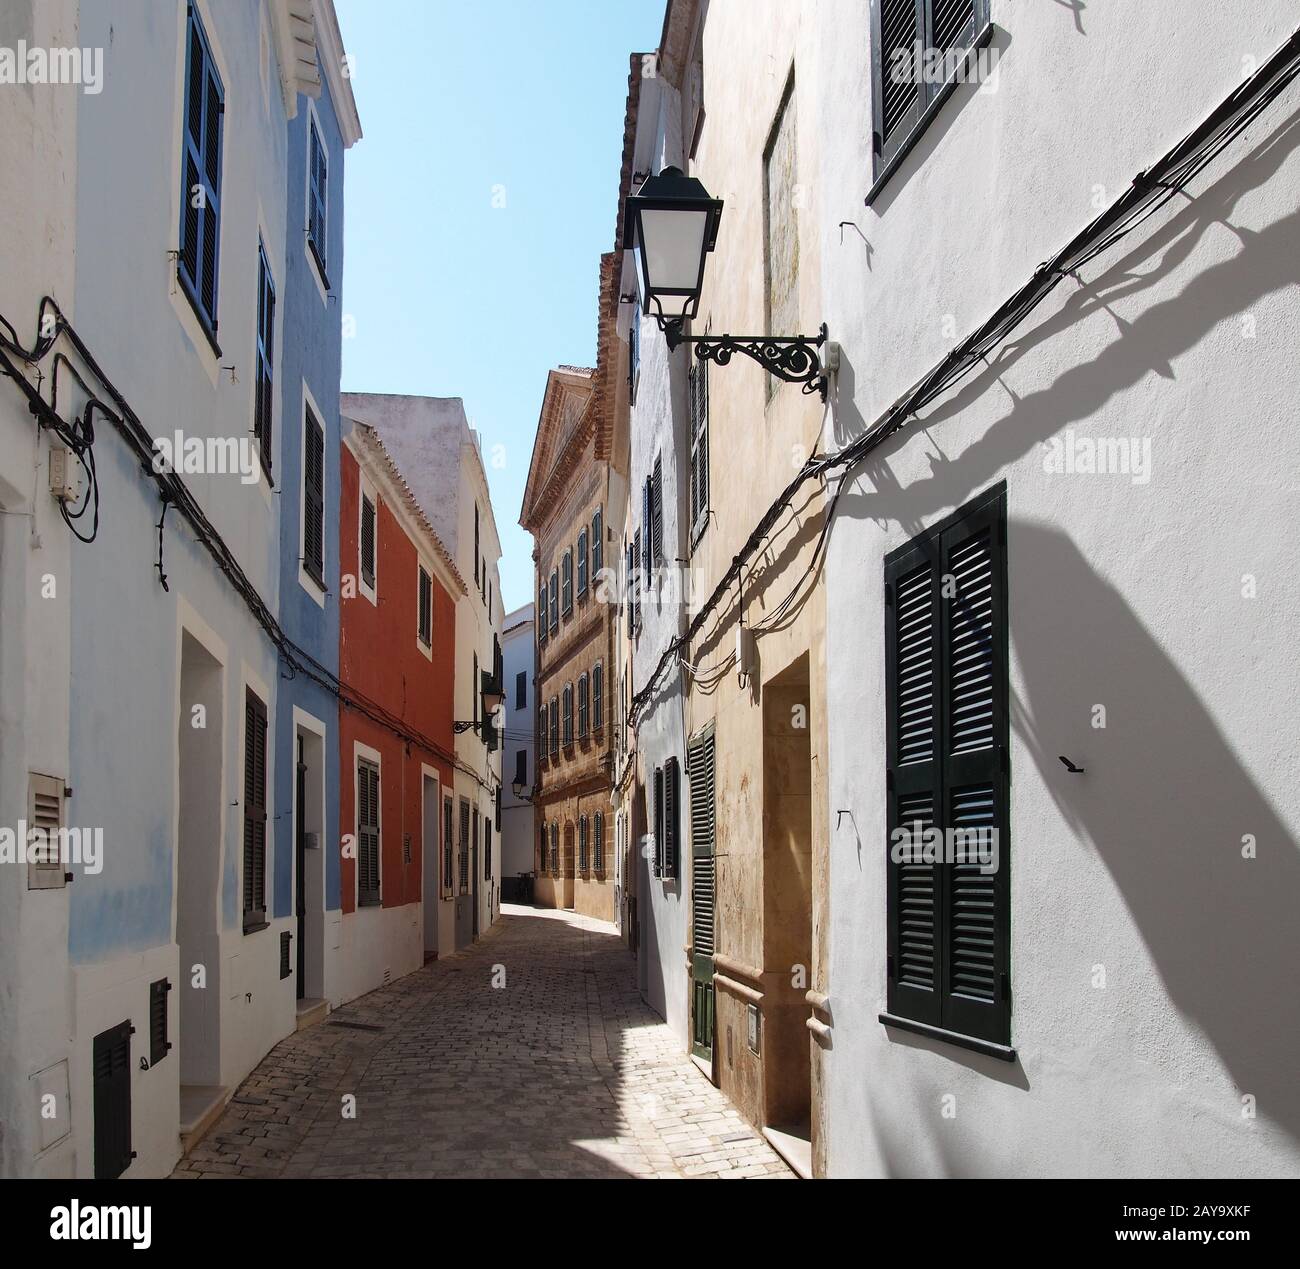 Une rue de ville vide lumineuse et ensoleillée de maisons anciennes pittoresques à Ciutadella menorca Banque D'Images